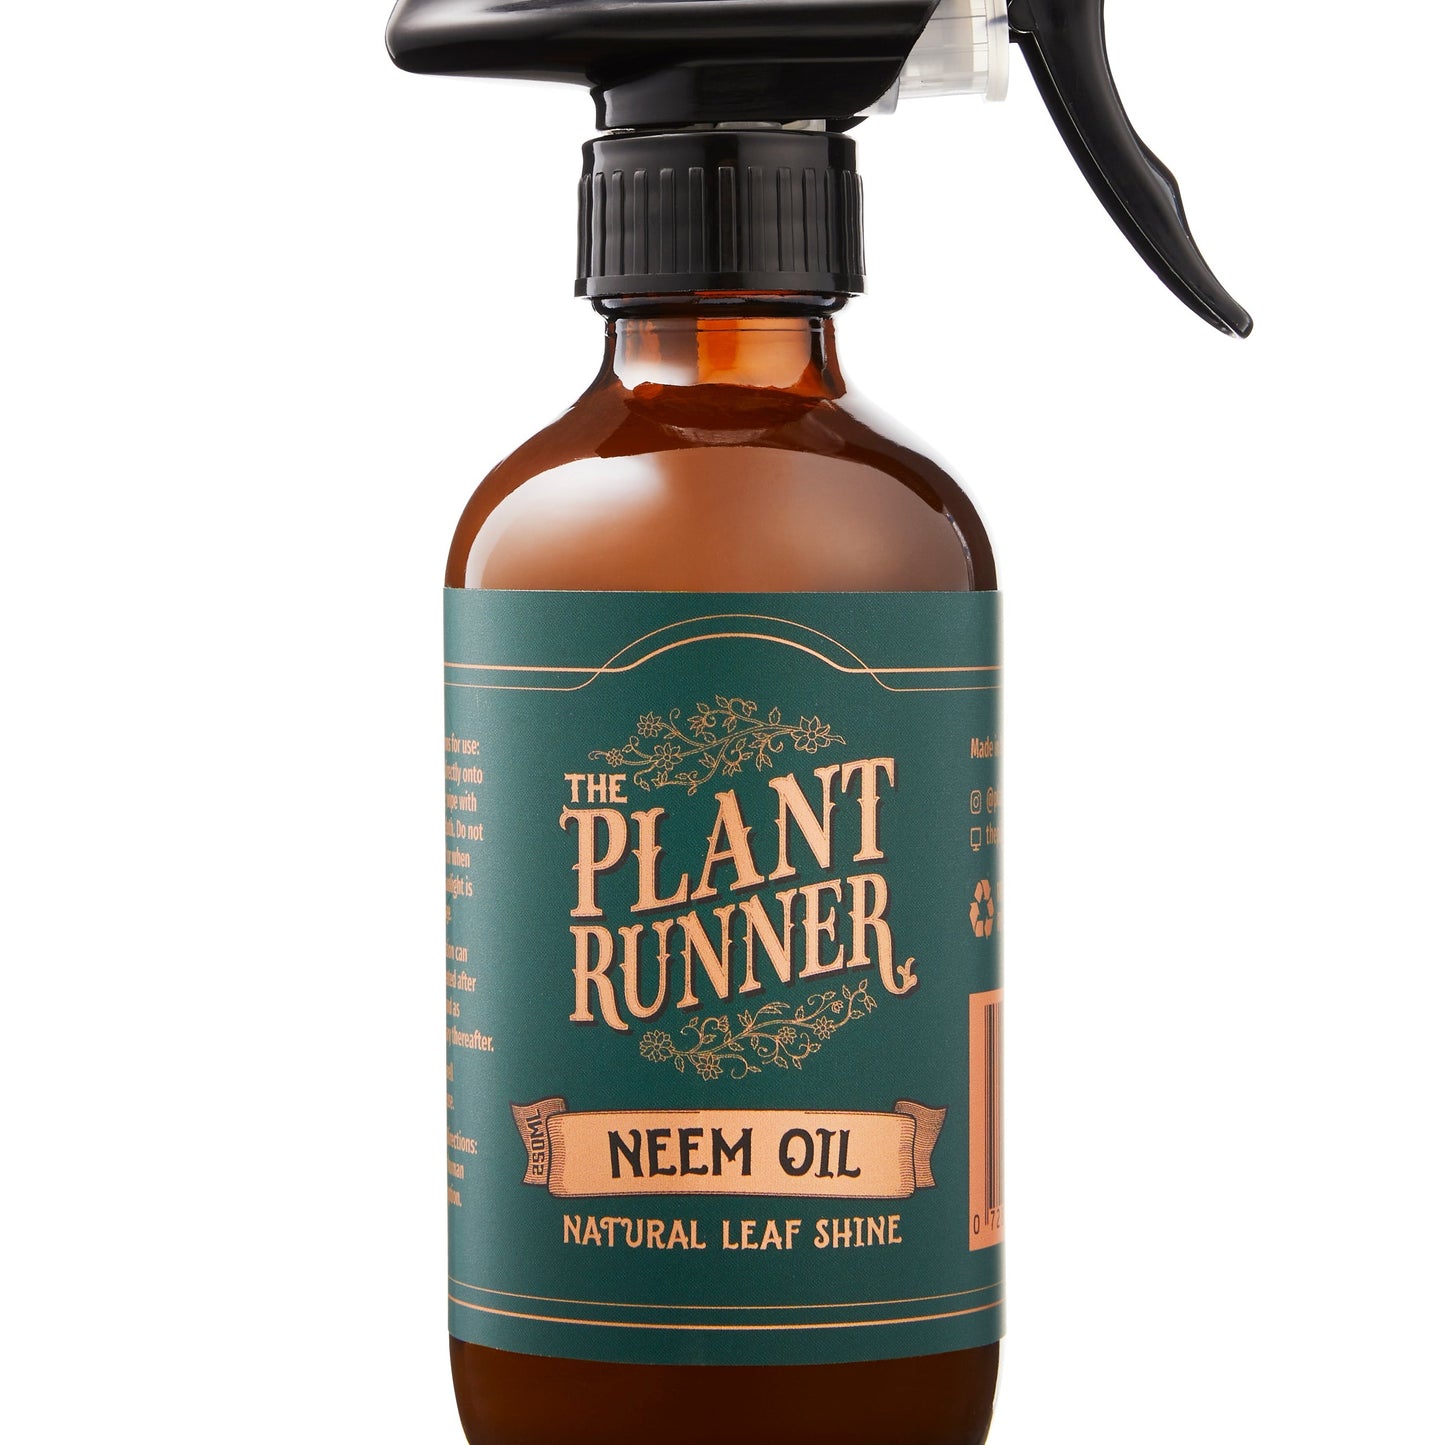 The Plant Runner Neem Oil